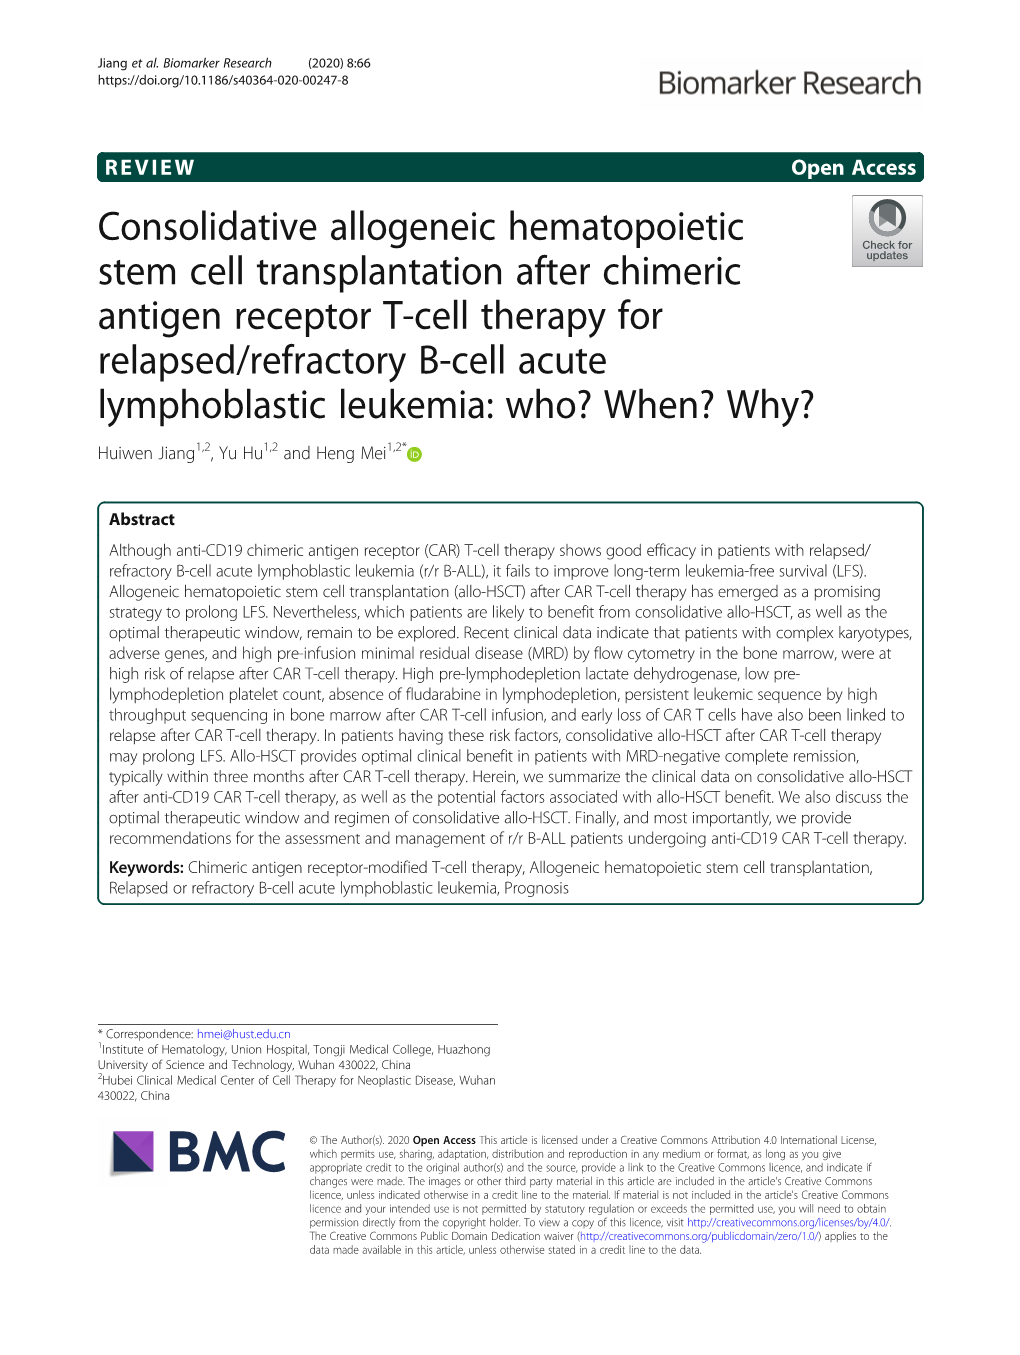 Consolidative Allogeneic Hematopoietic